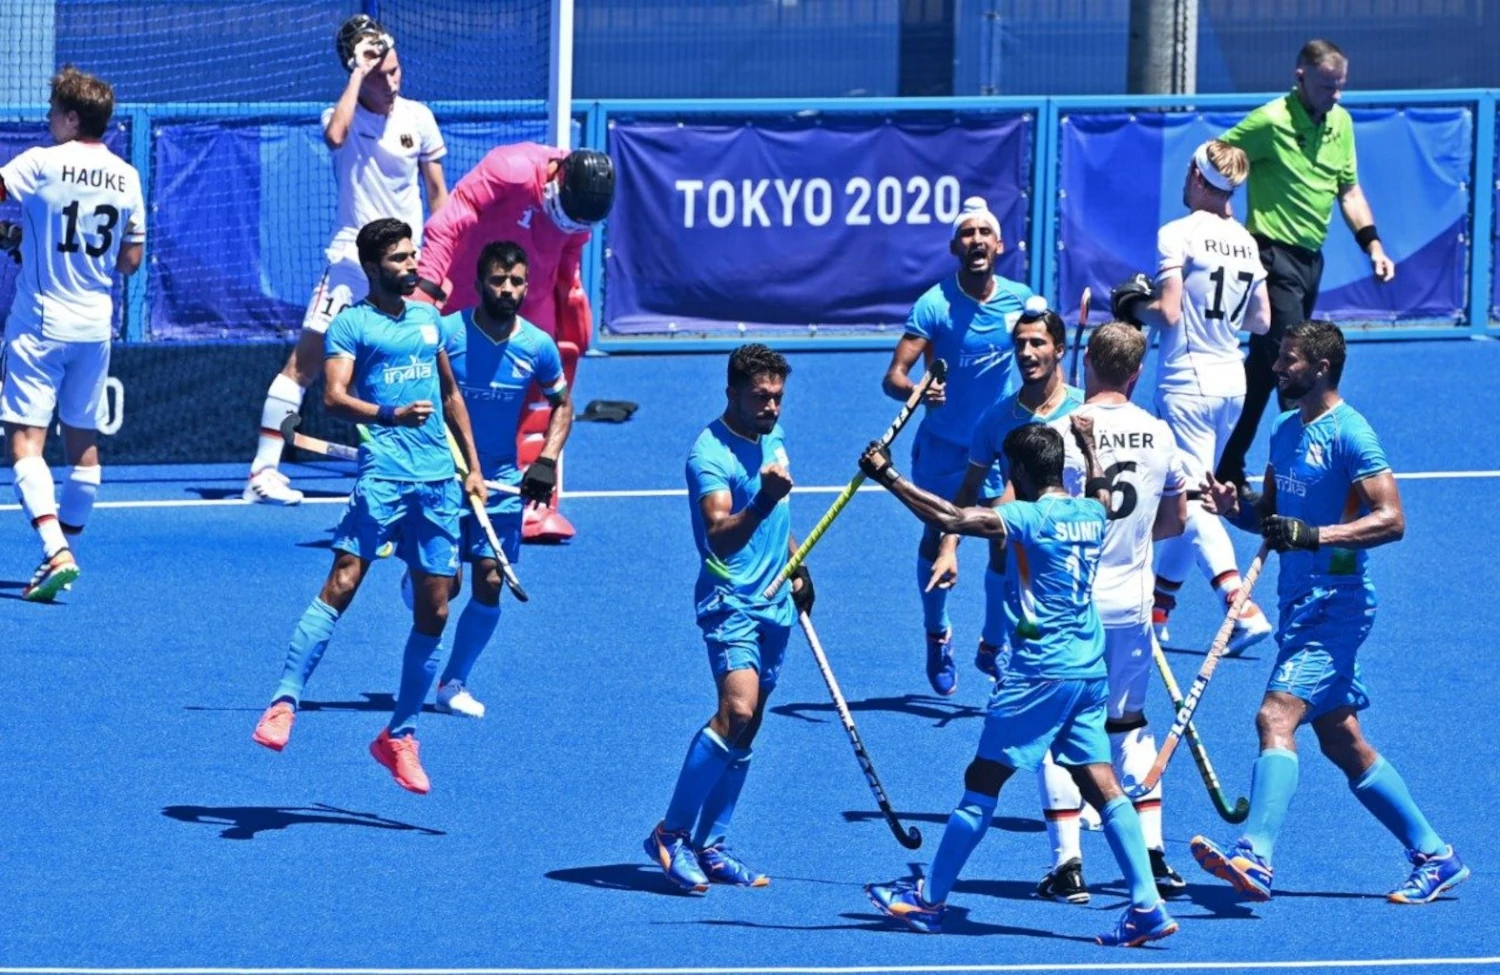 India’s men’s hockey team wins bronze in tokyo Onlympics 2021